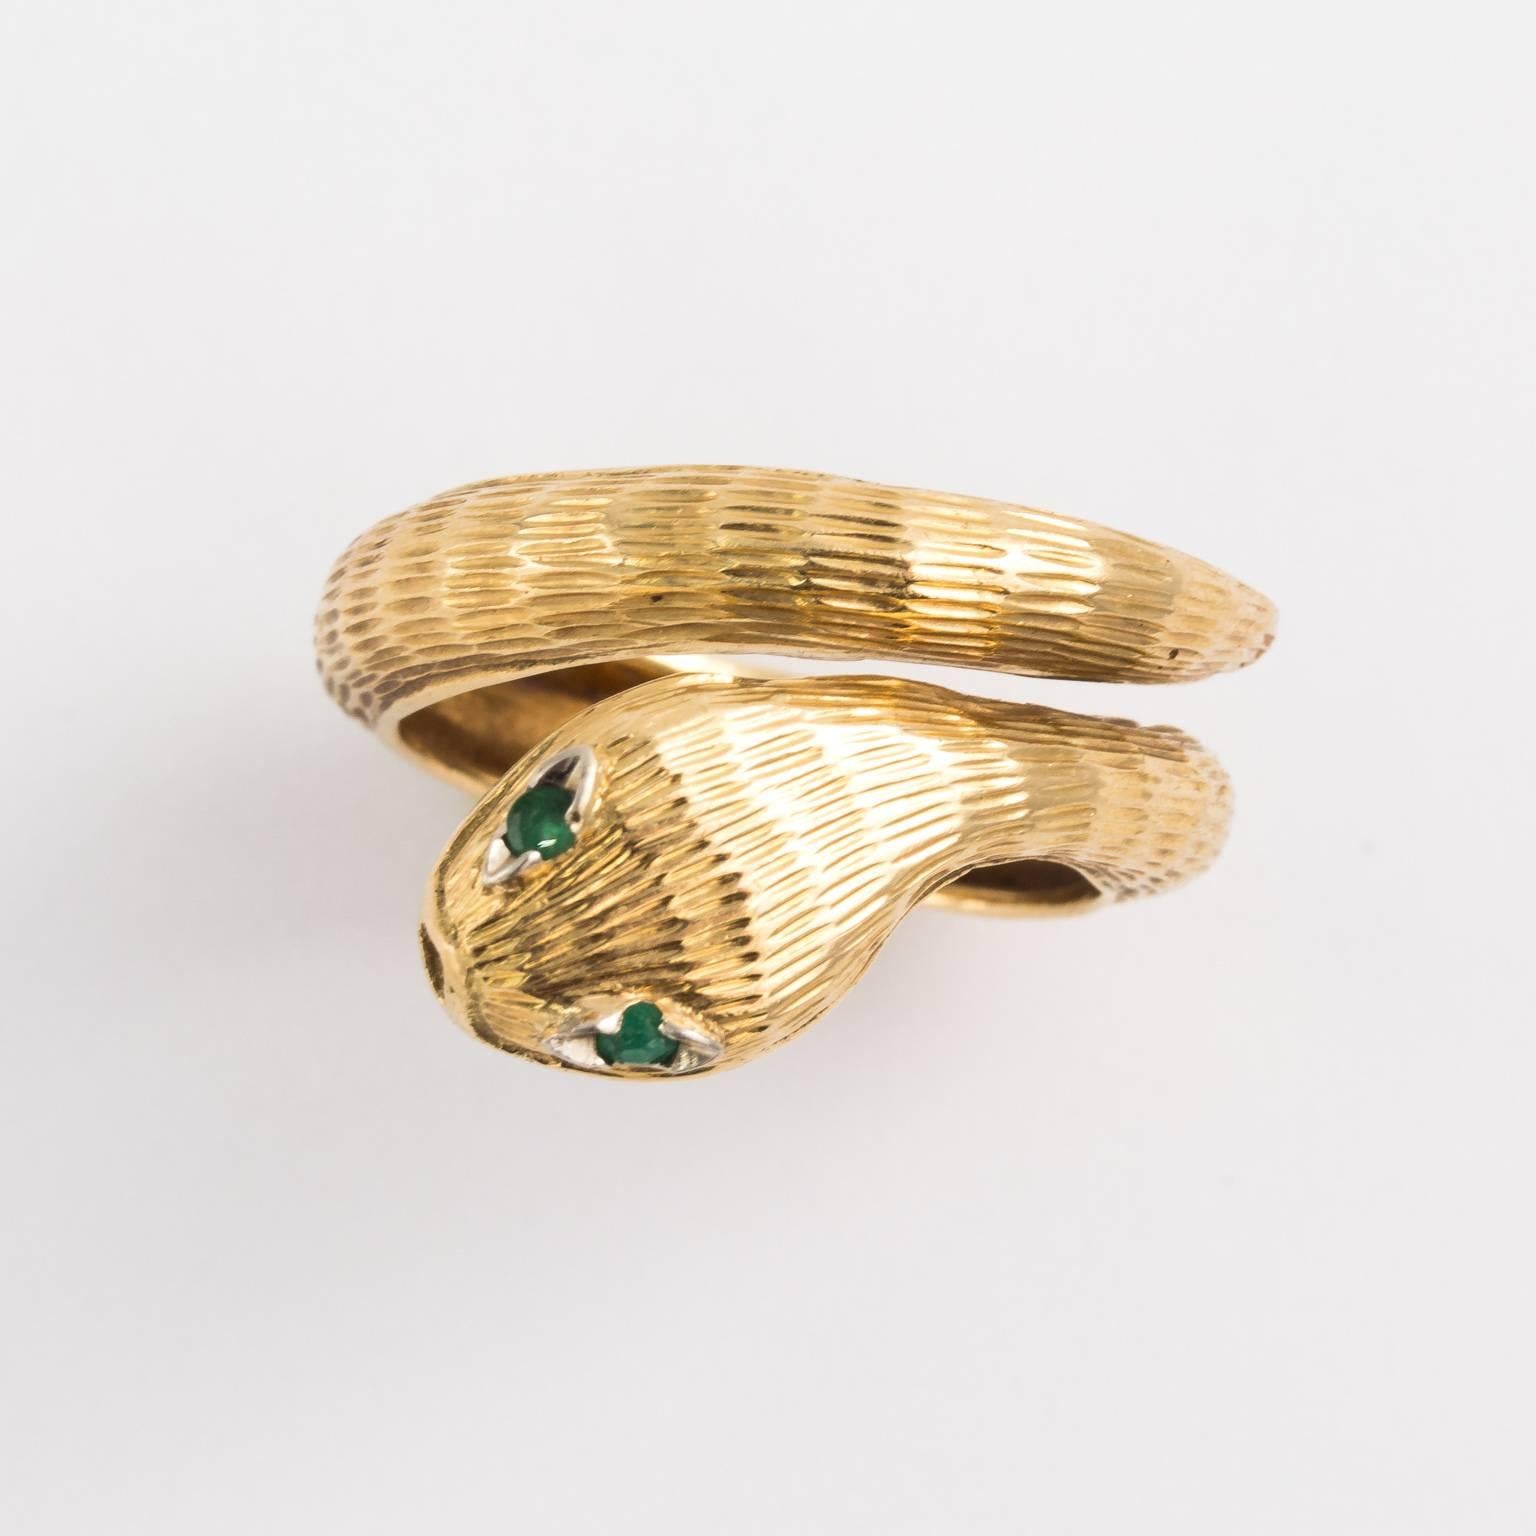 Mid 20th century Italian 18kt snake ring.
